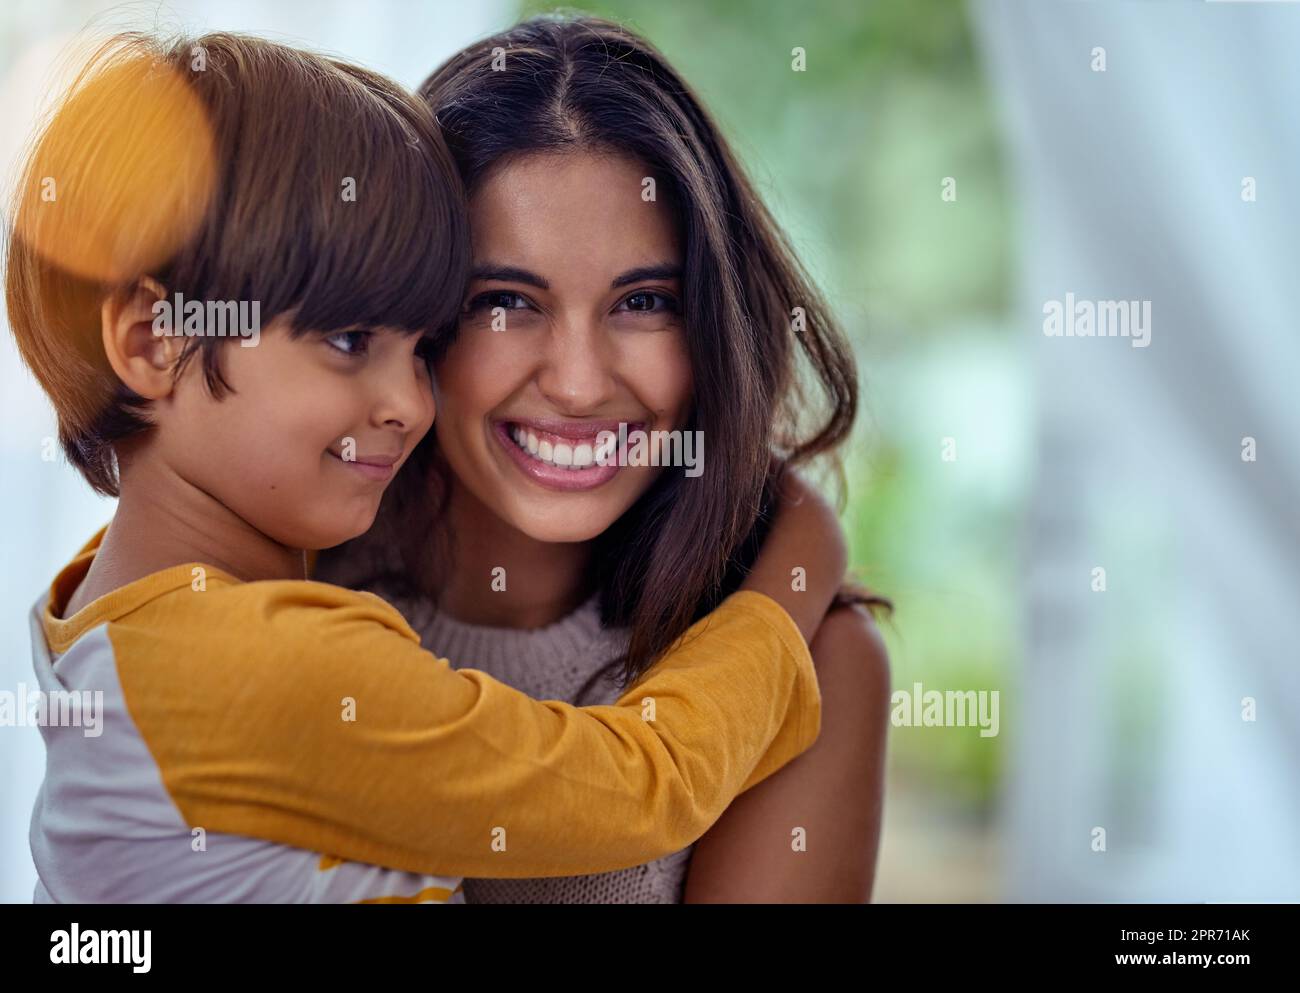 Mütter lieben, das Fundament, auf dem sich glückliche Kindheiten bilden. Aufnahme eines entzückenden kleinen Jungen, der seine Mutter zu Hause liebevoll umarmt. Stockfoto